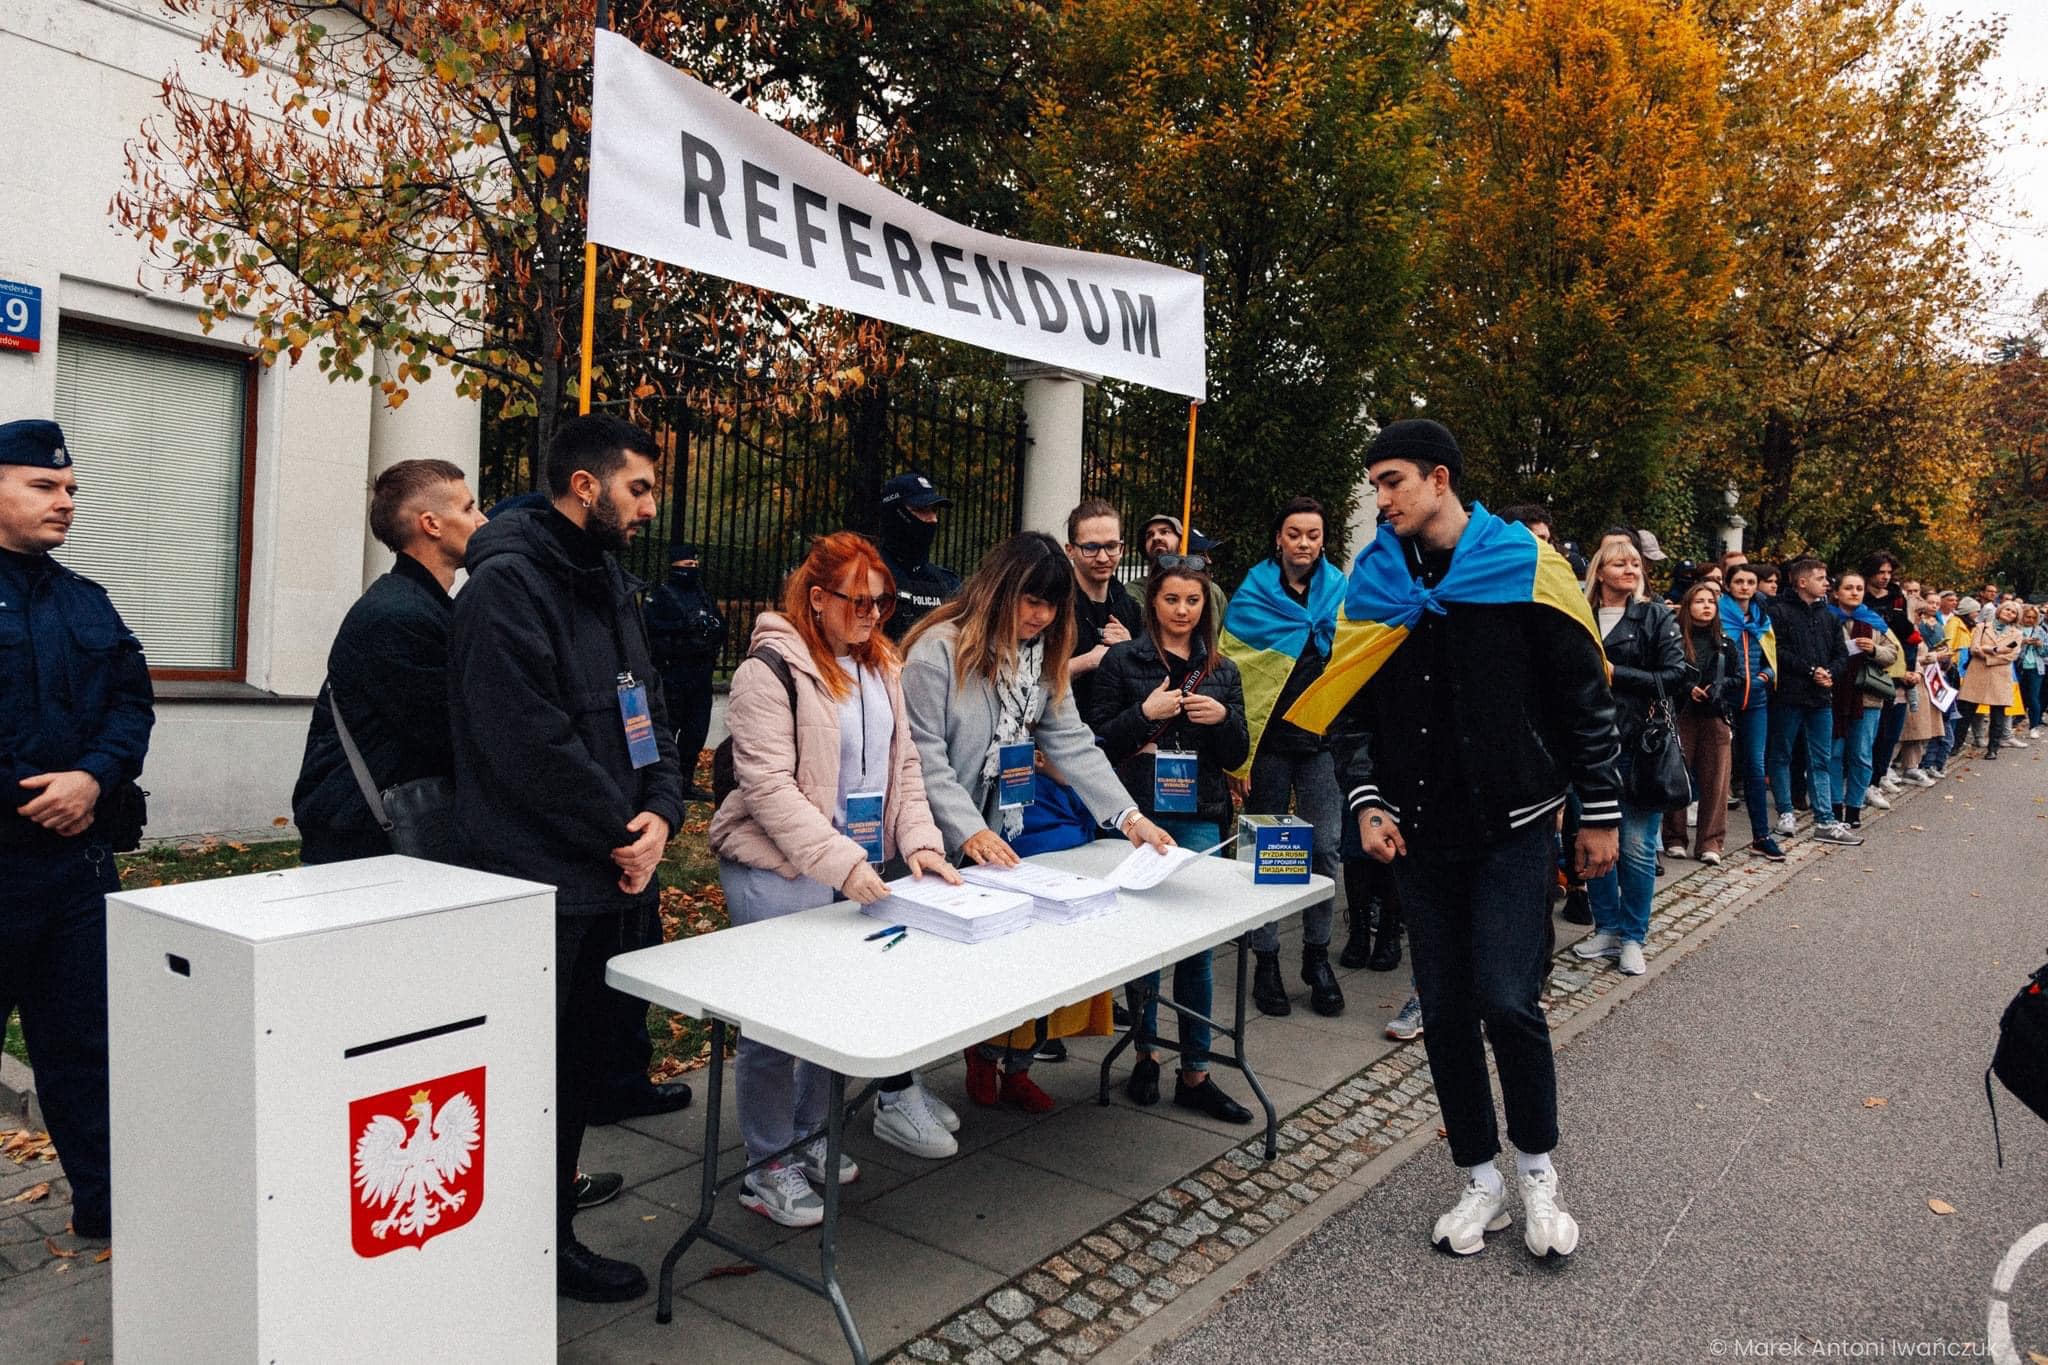 Тисячі людей у Варшаві проголосували за “анексію російського посольства”